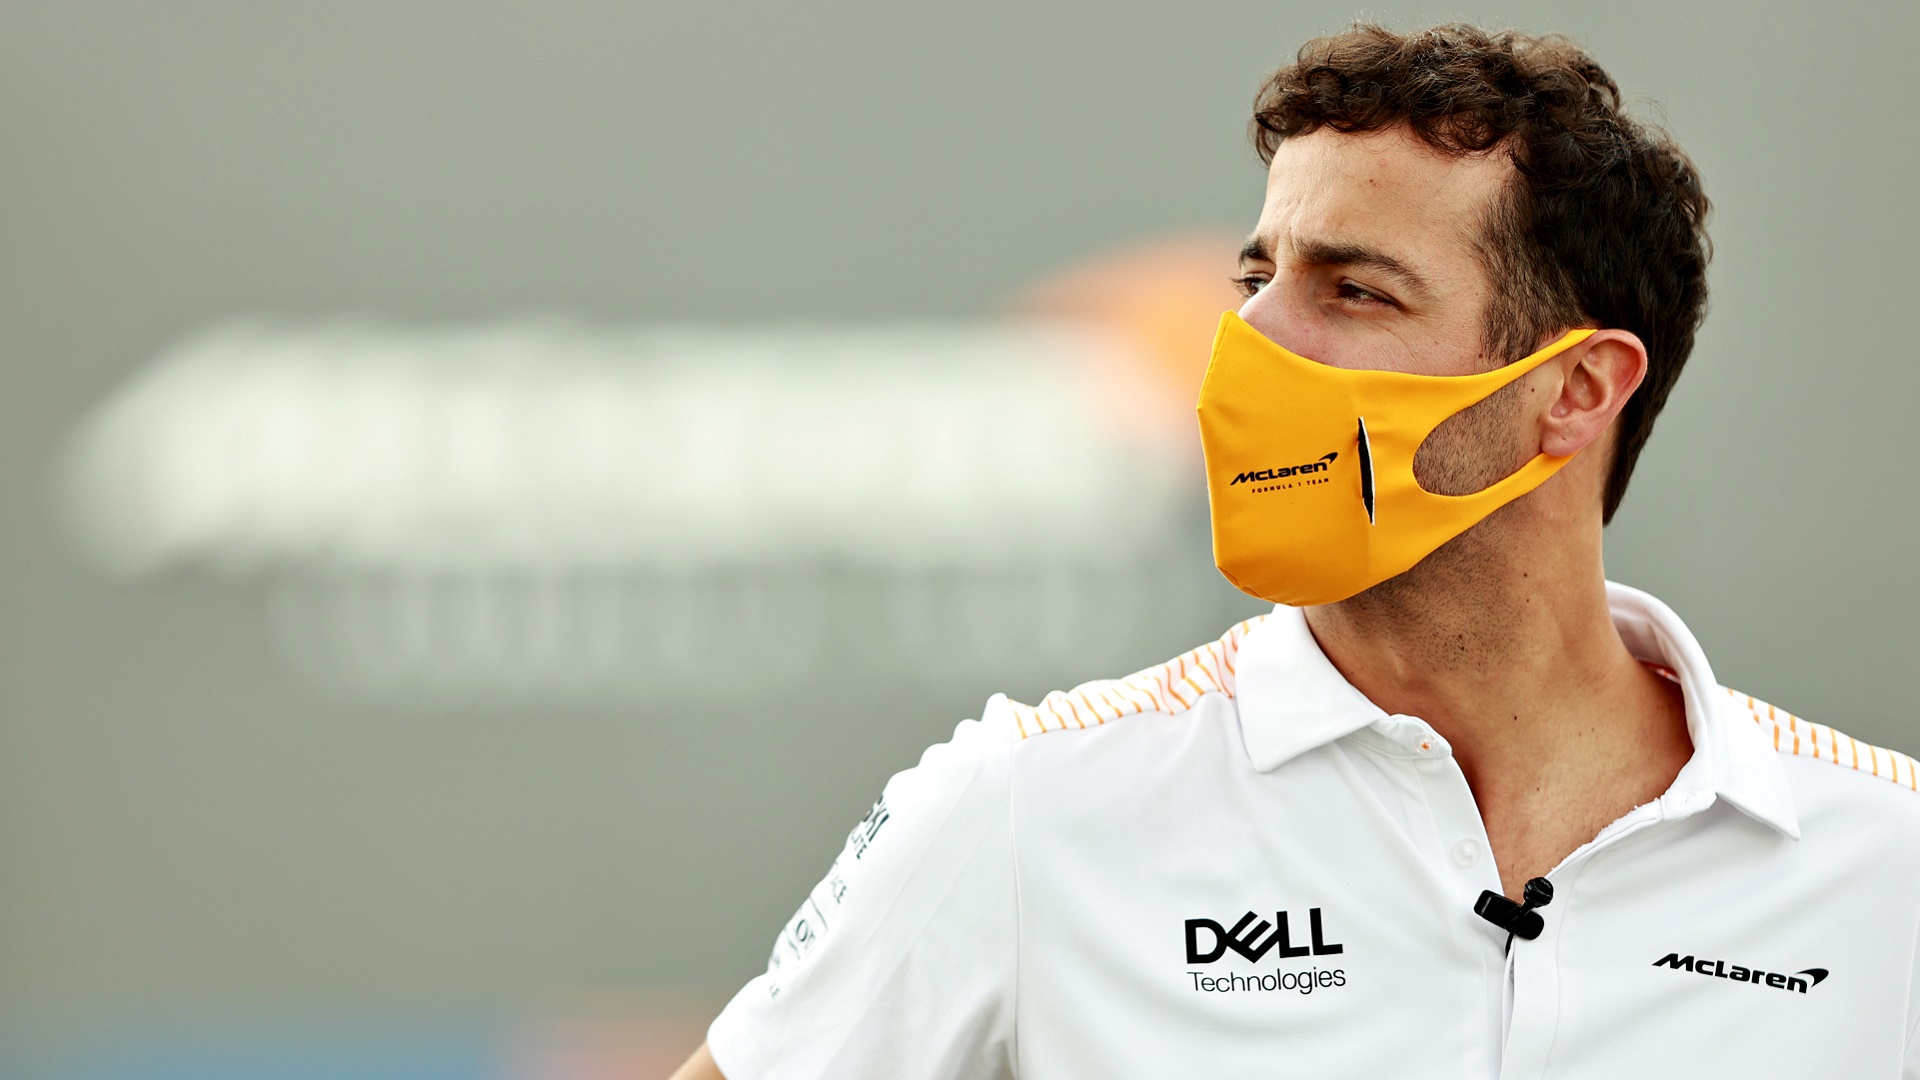 2021-03-12 Ricciardo McLaren F1 Formula 1